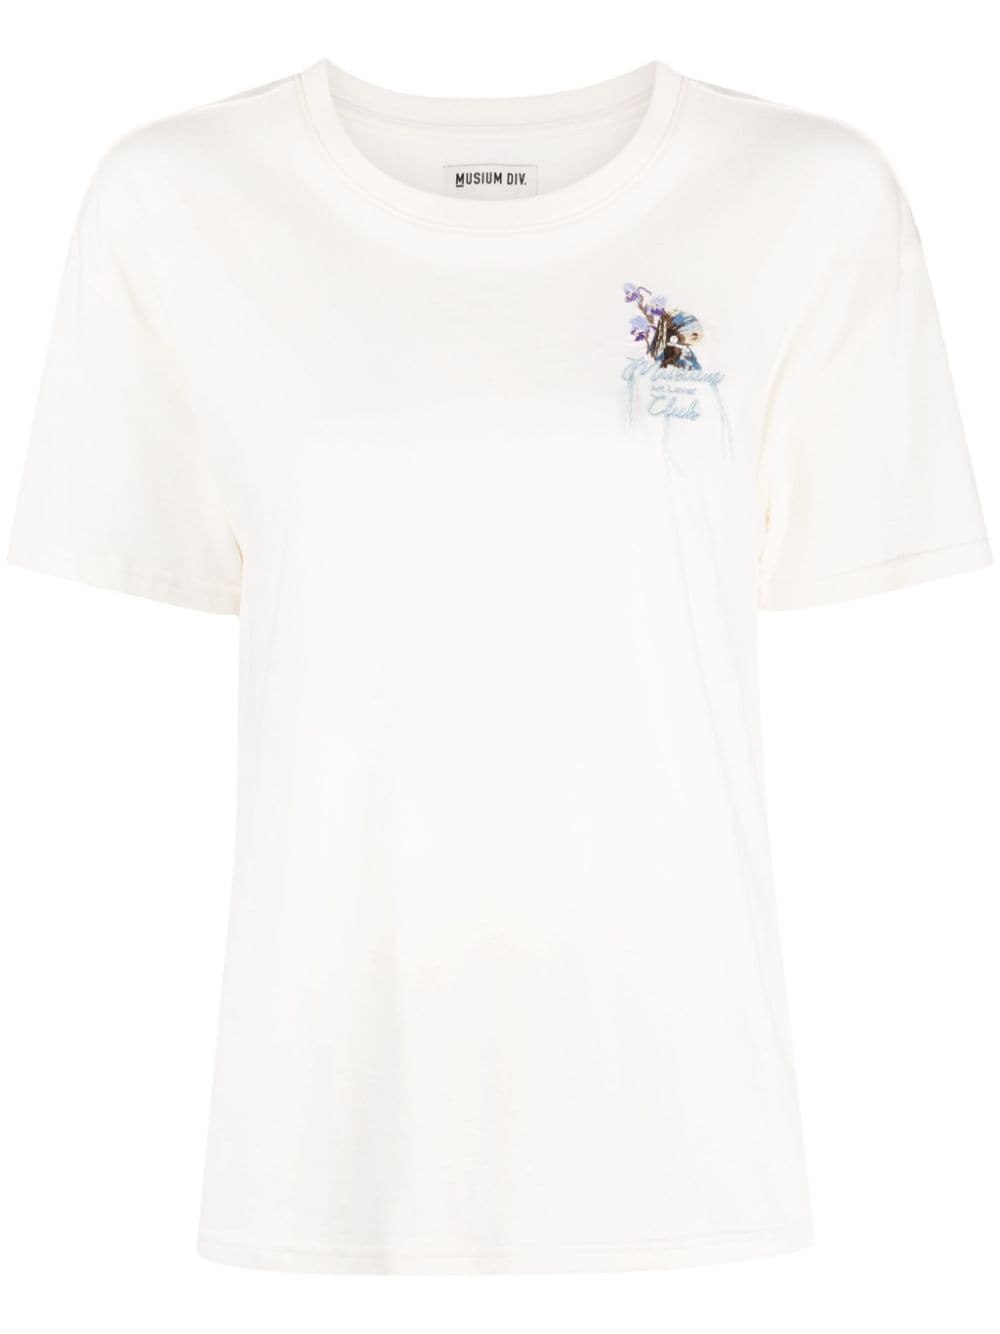 Musium Div. Art Lover Club cotton T-shirt - White von Musium Div.